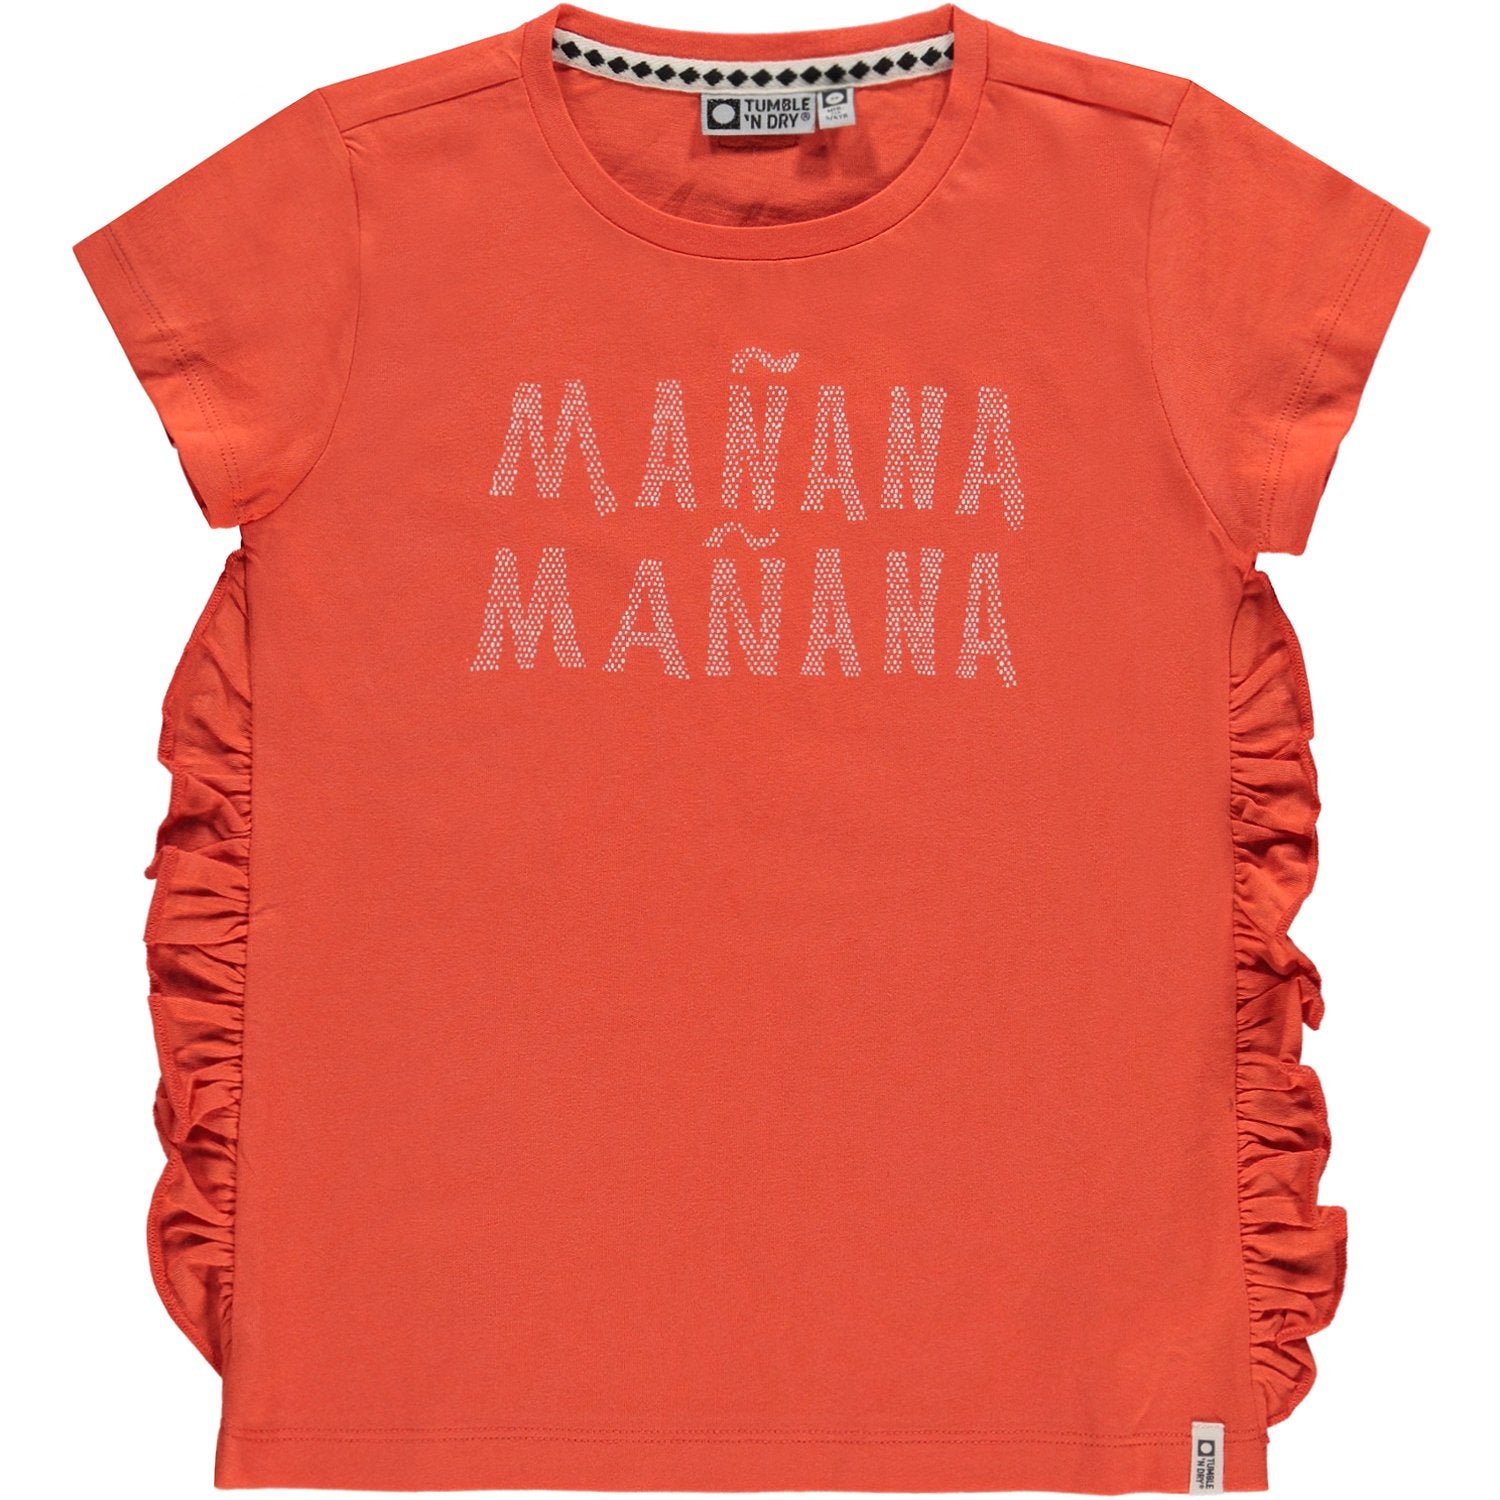 Meisjes T-shirt Km O-hals van Tumble 'n Dry in de kleur Nasturtium in maat 134/140.